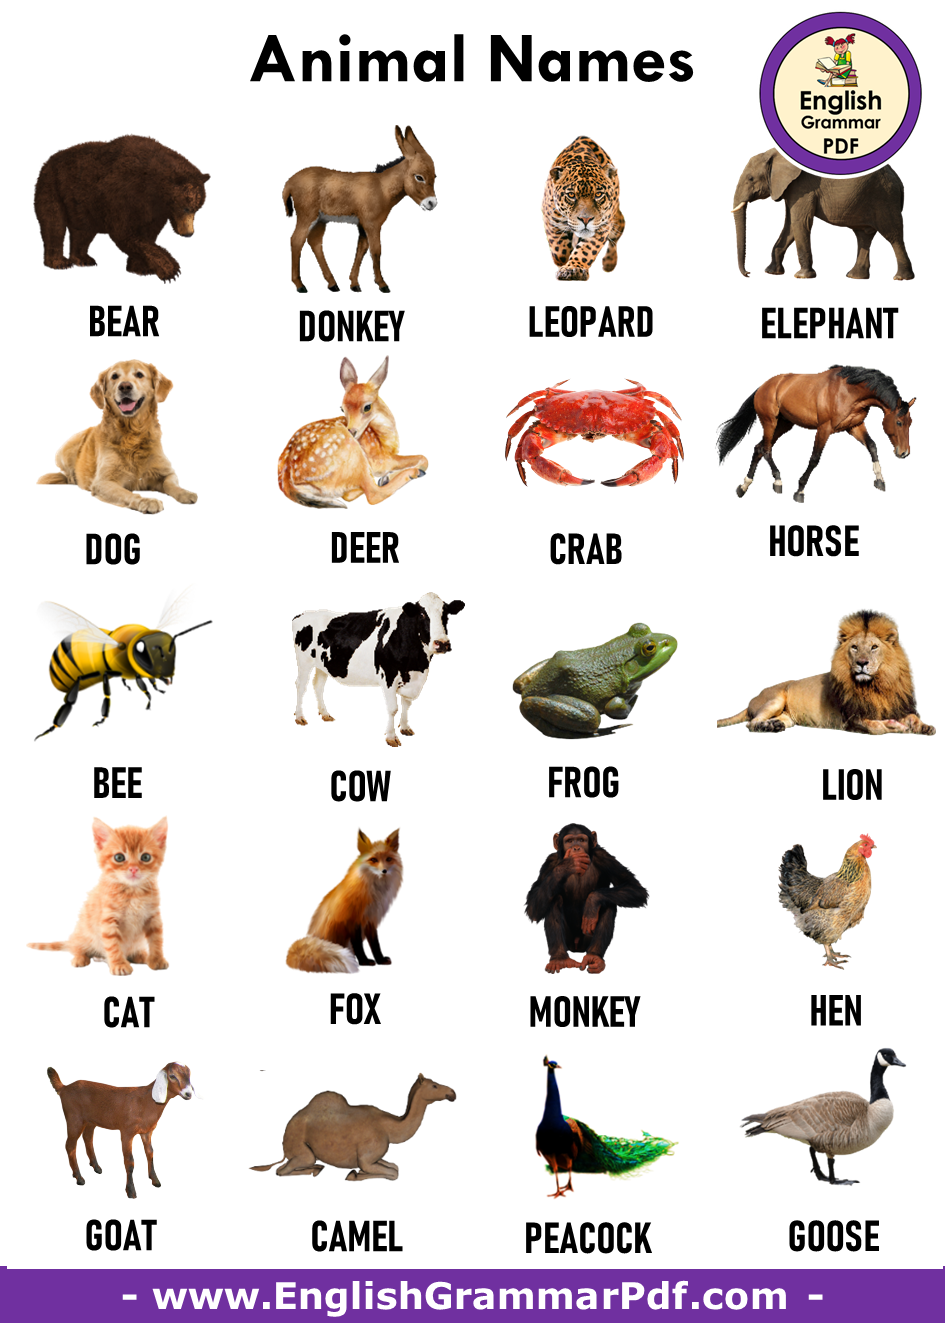 Названия кличек животных